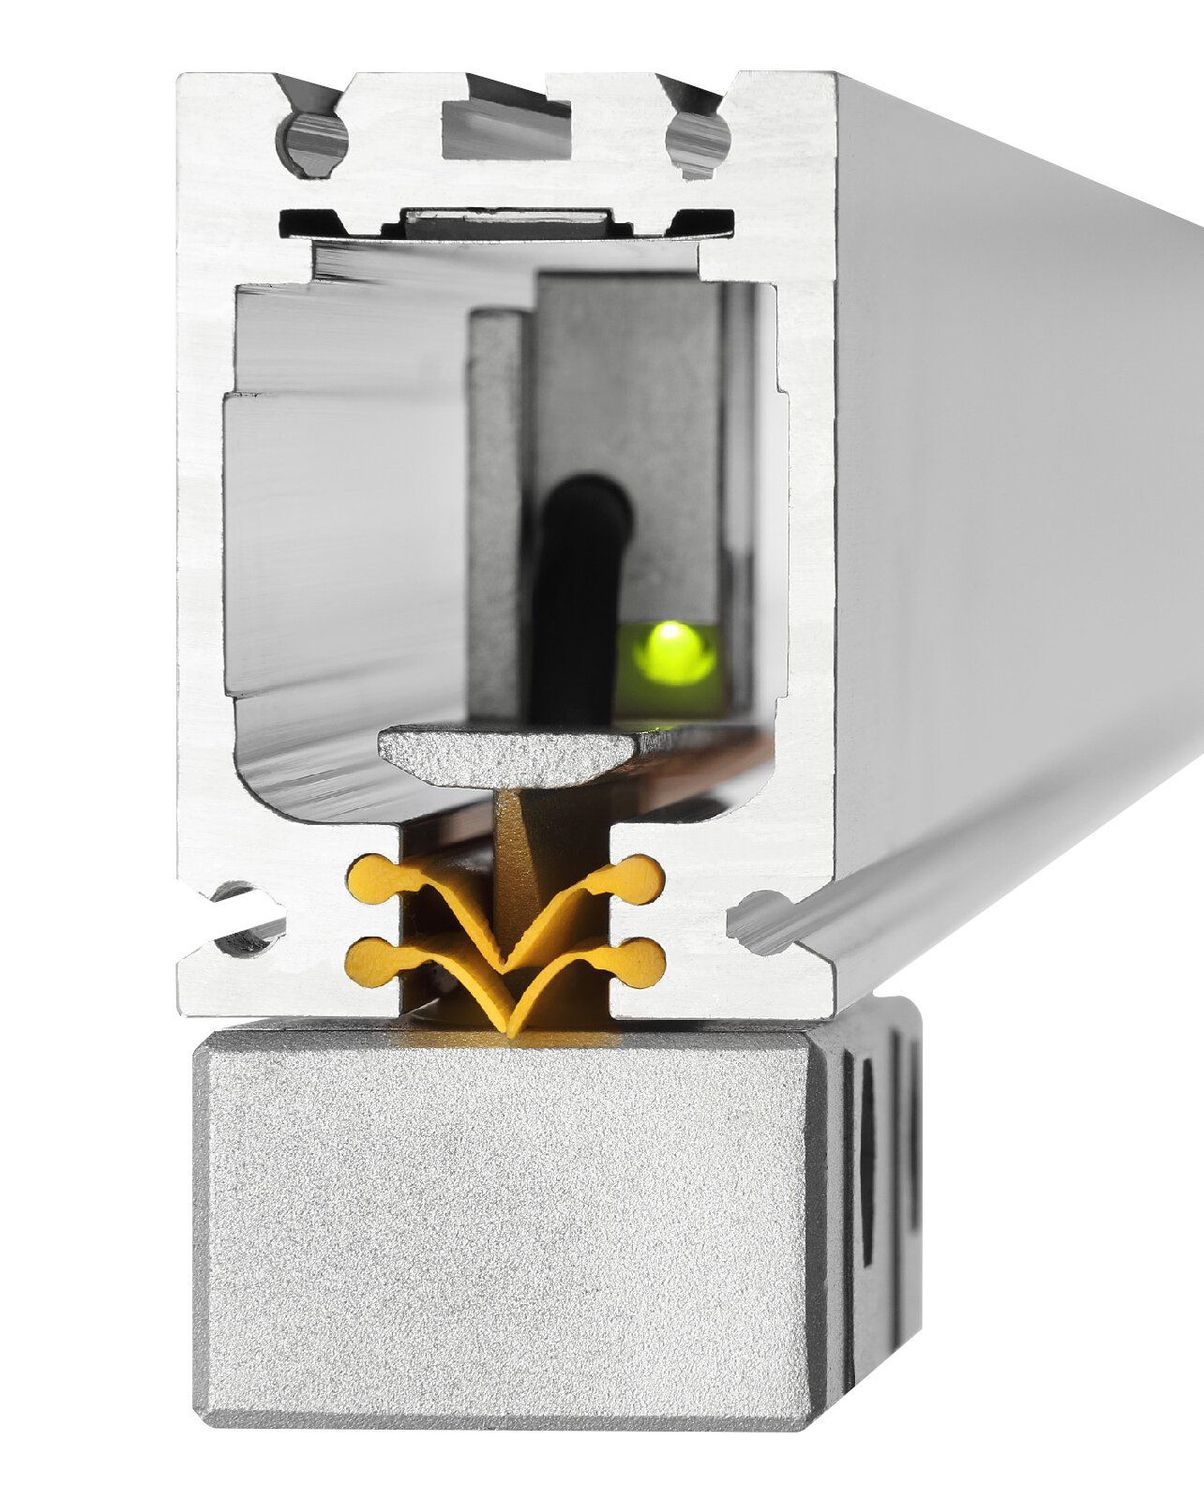 K+C Magnetmaßstab MSX 900 mm - 5 µm | Verfahrweg 910 mm